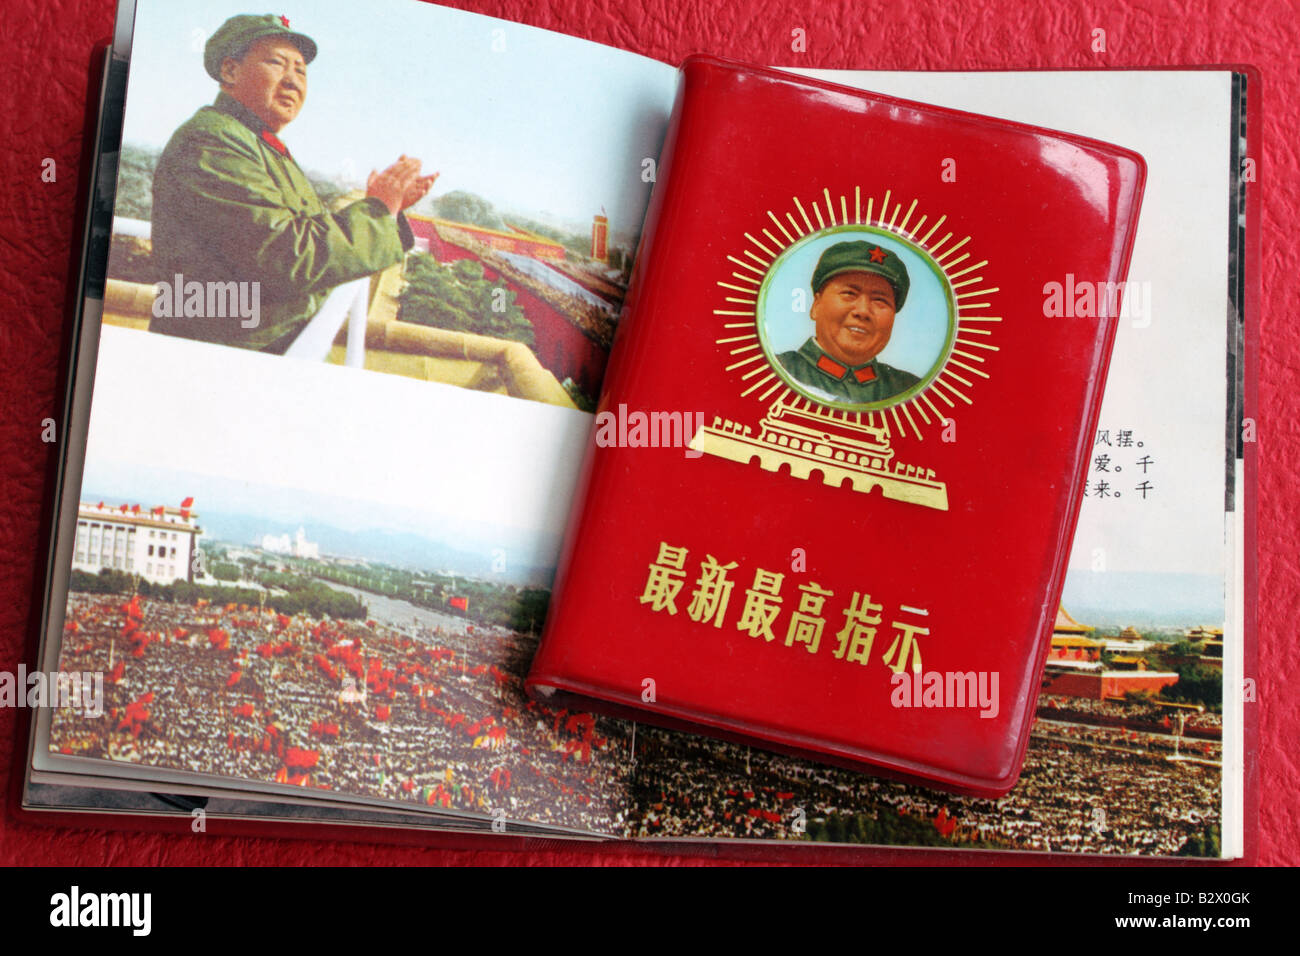 Le président Mao applaudissant avec mer de gardes rouges sur le balcon de Tiananmen dans la révolution culturelle chinoise et son fameux livre rouge Banque D'Images